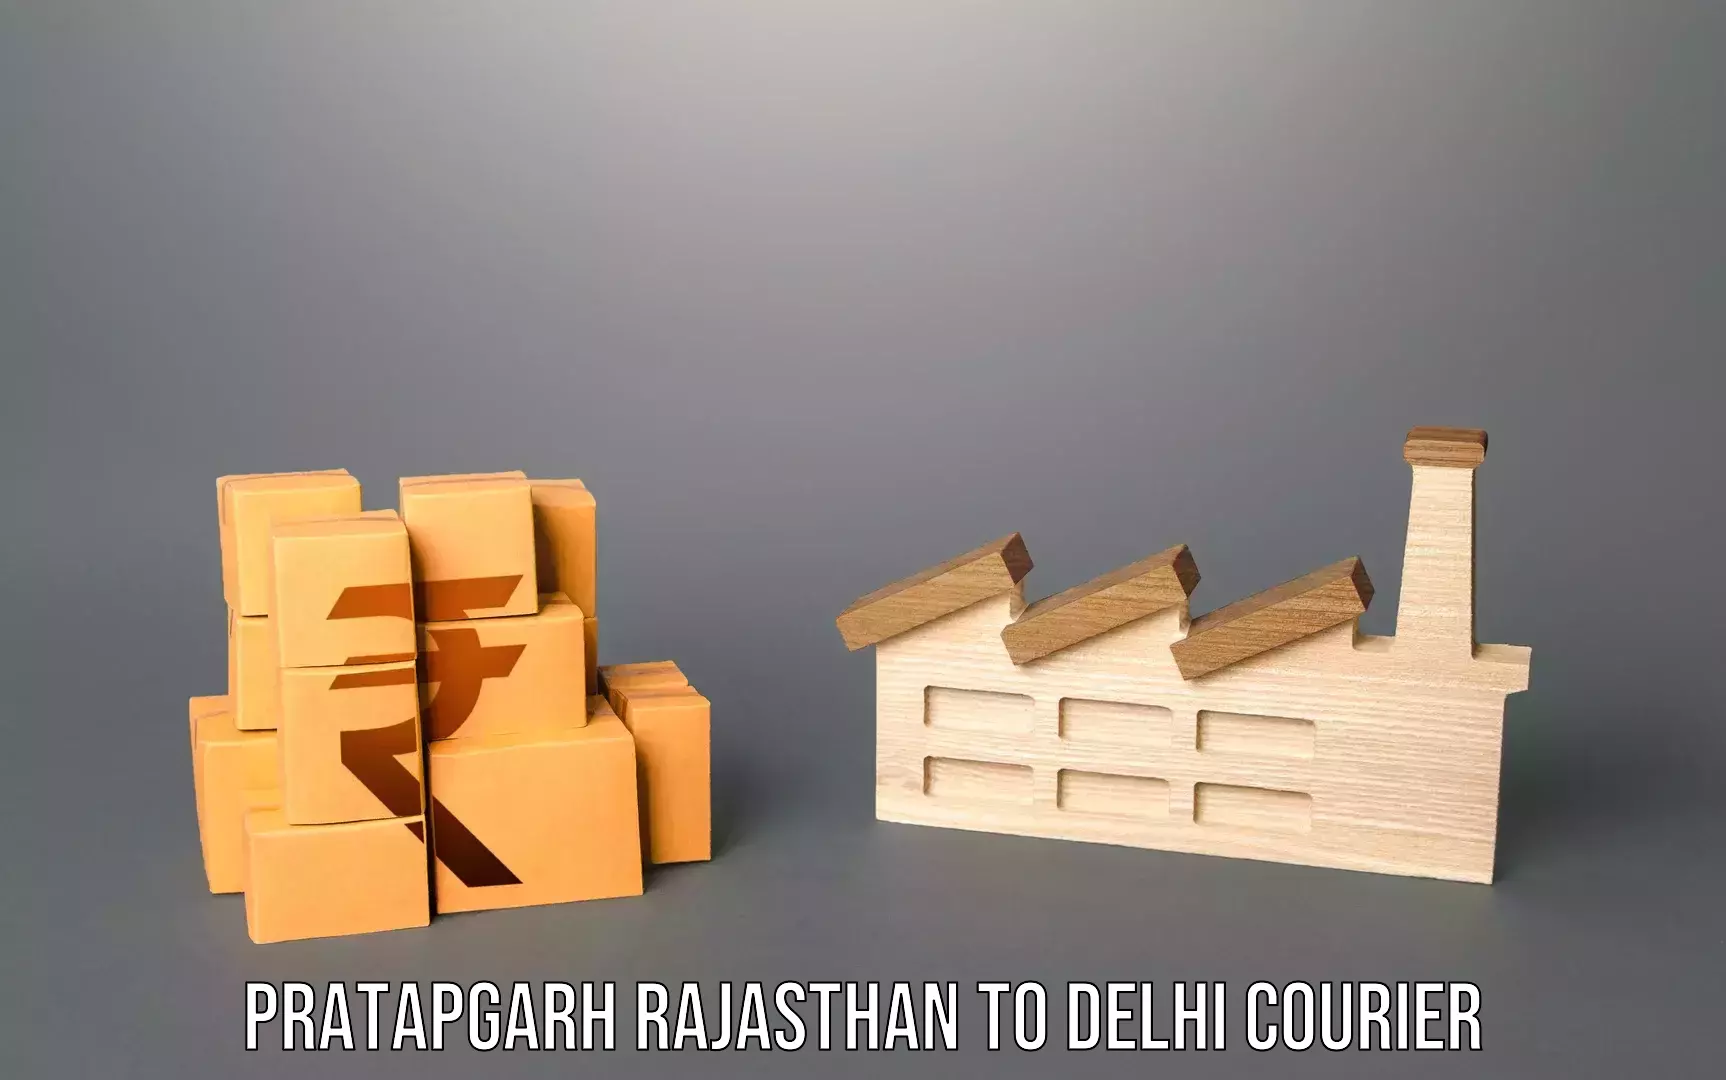 Baggage transport technology Pratapgarh Rajasthan to Jamia Millia Islamia New Delhi